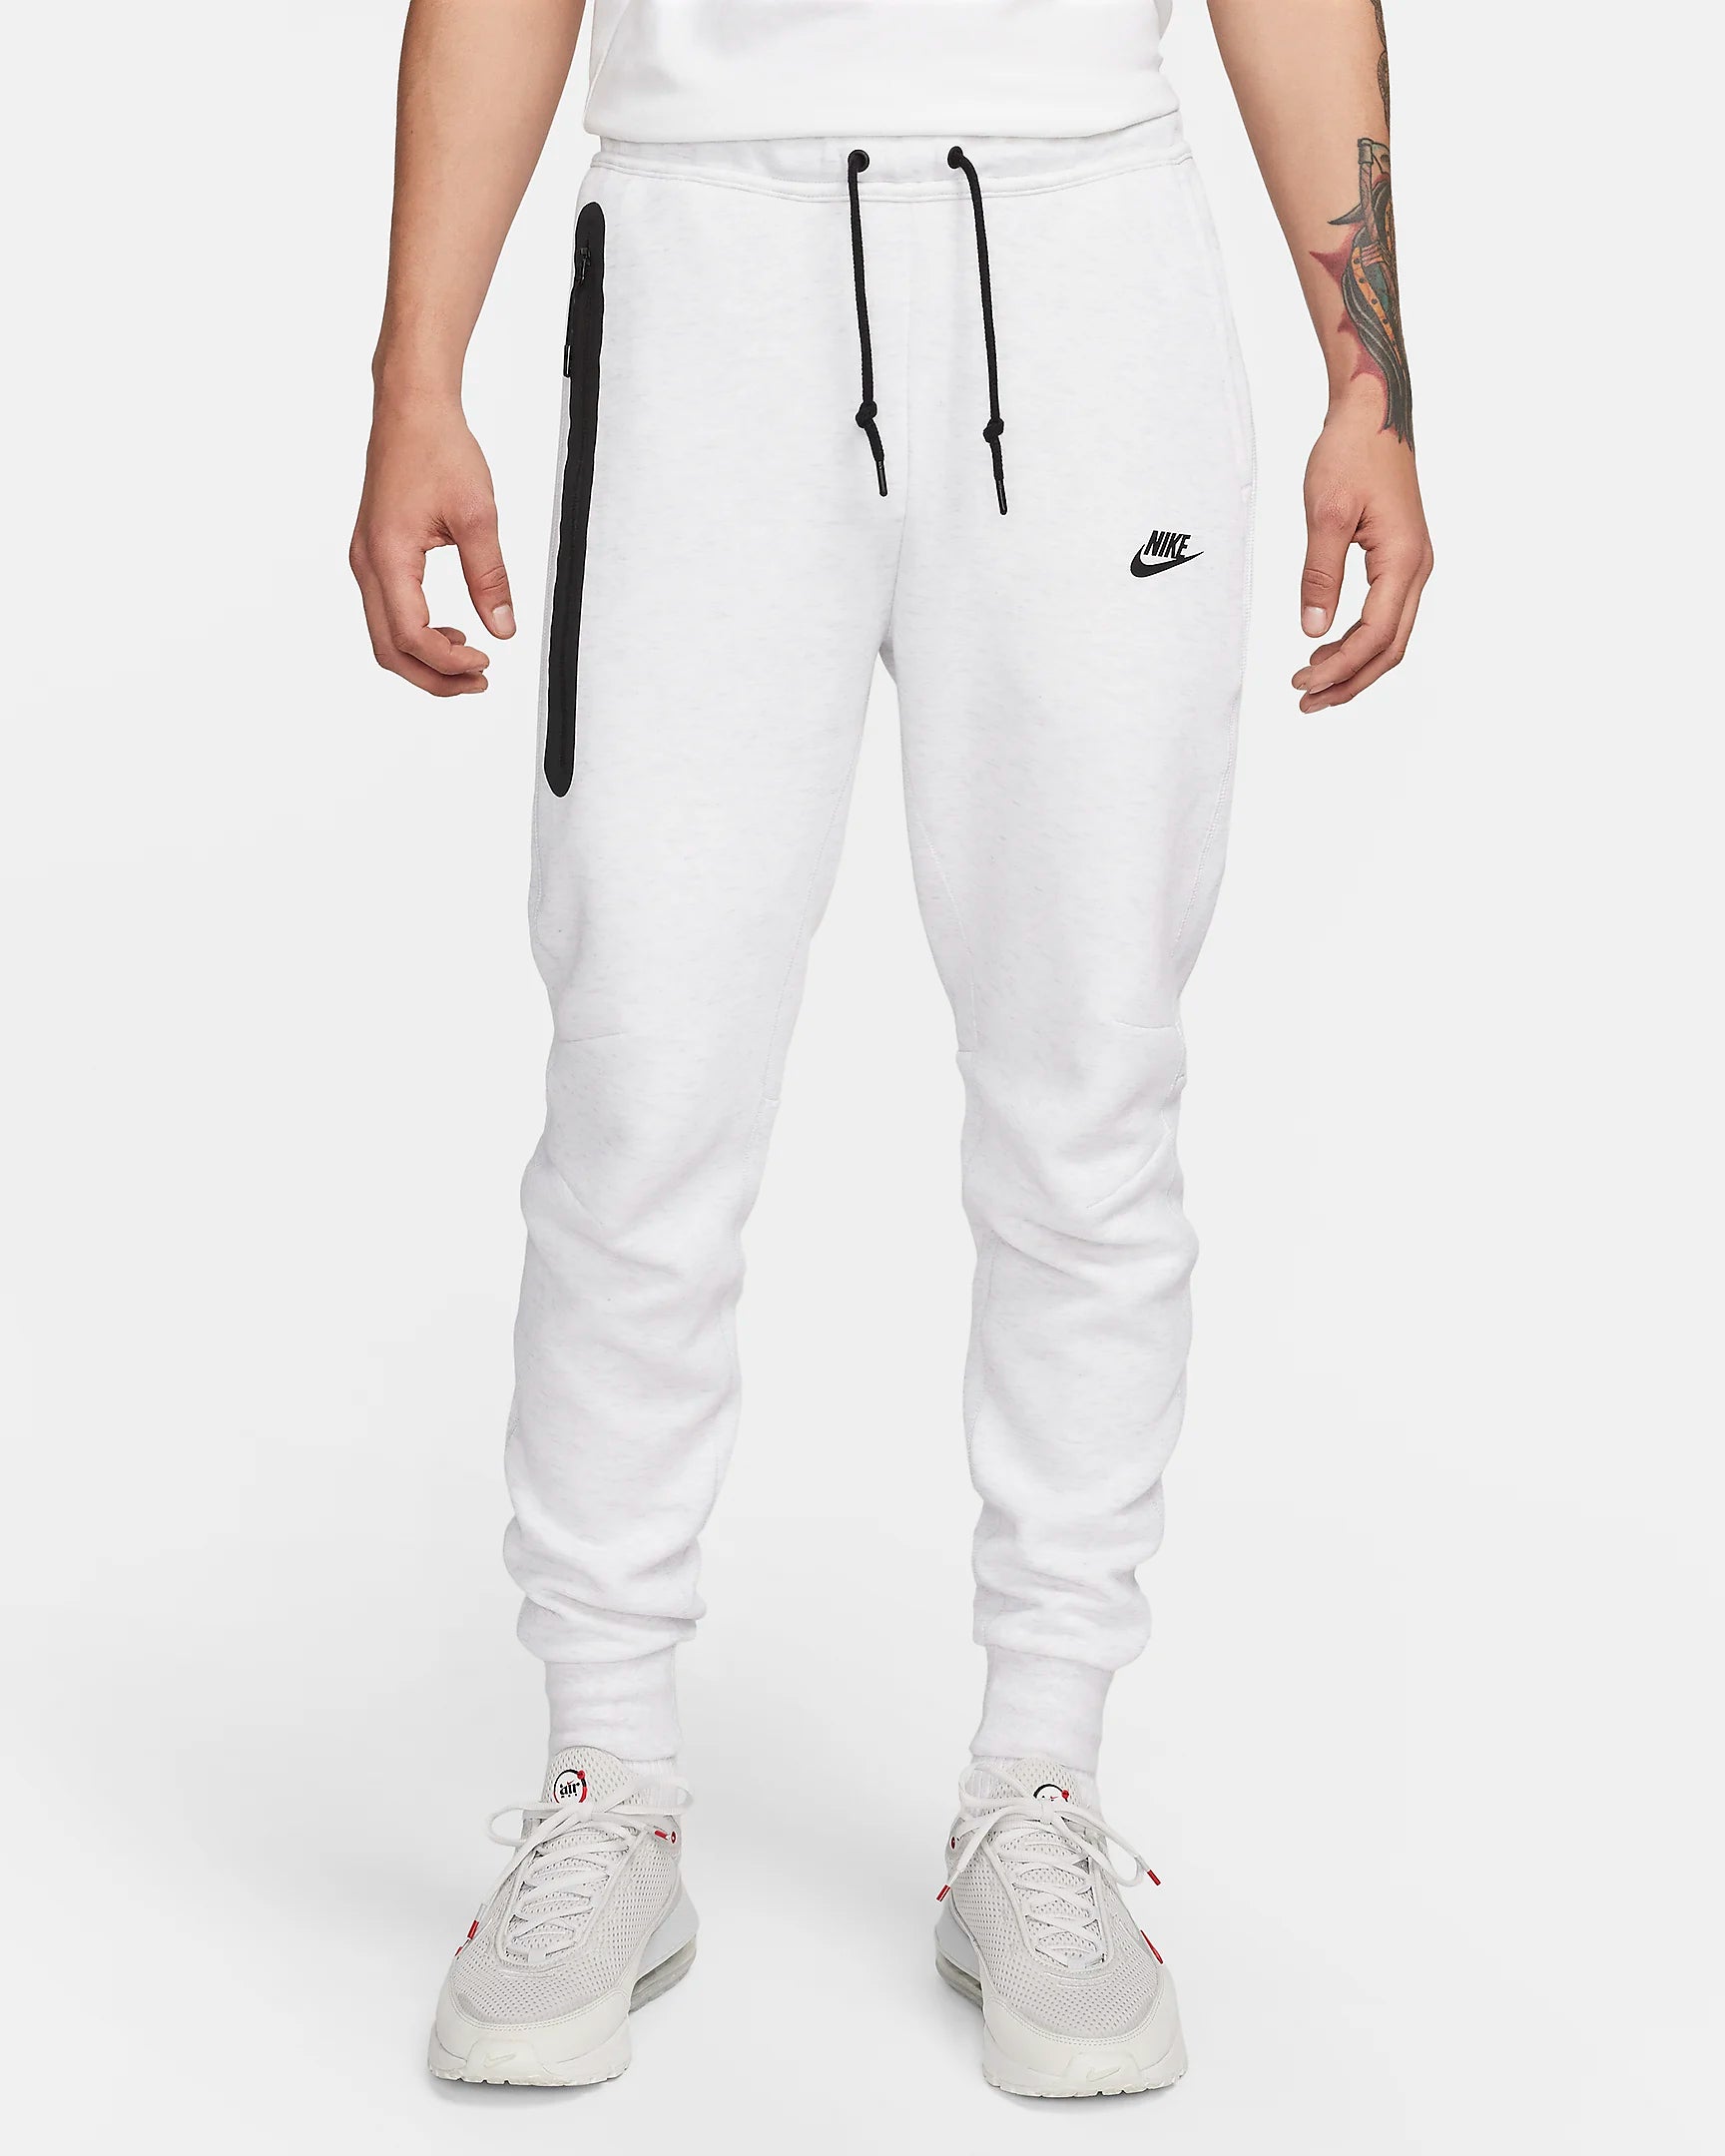 Pantalon Nike Tech Fleece - Gris/Noir